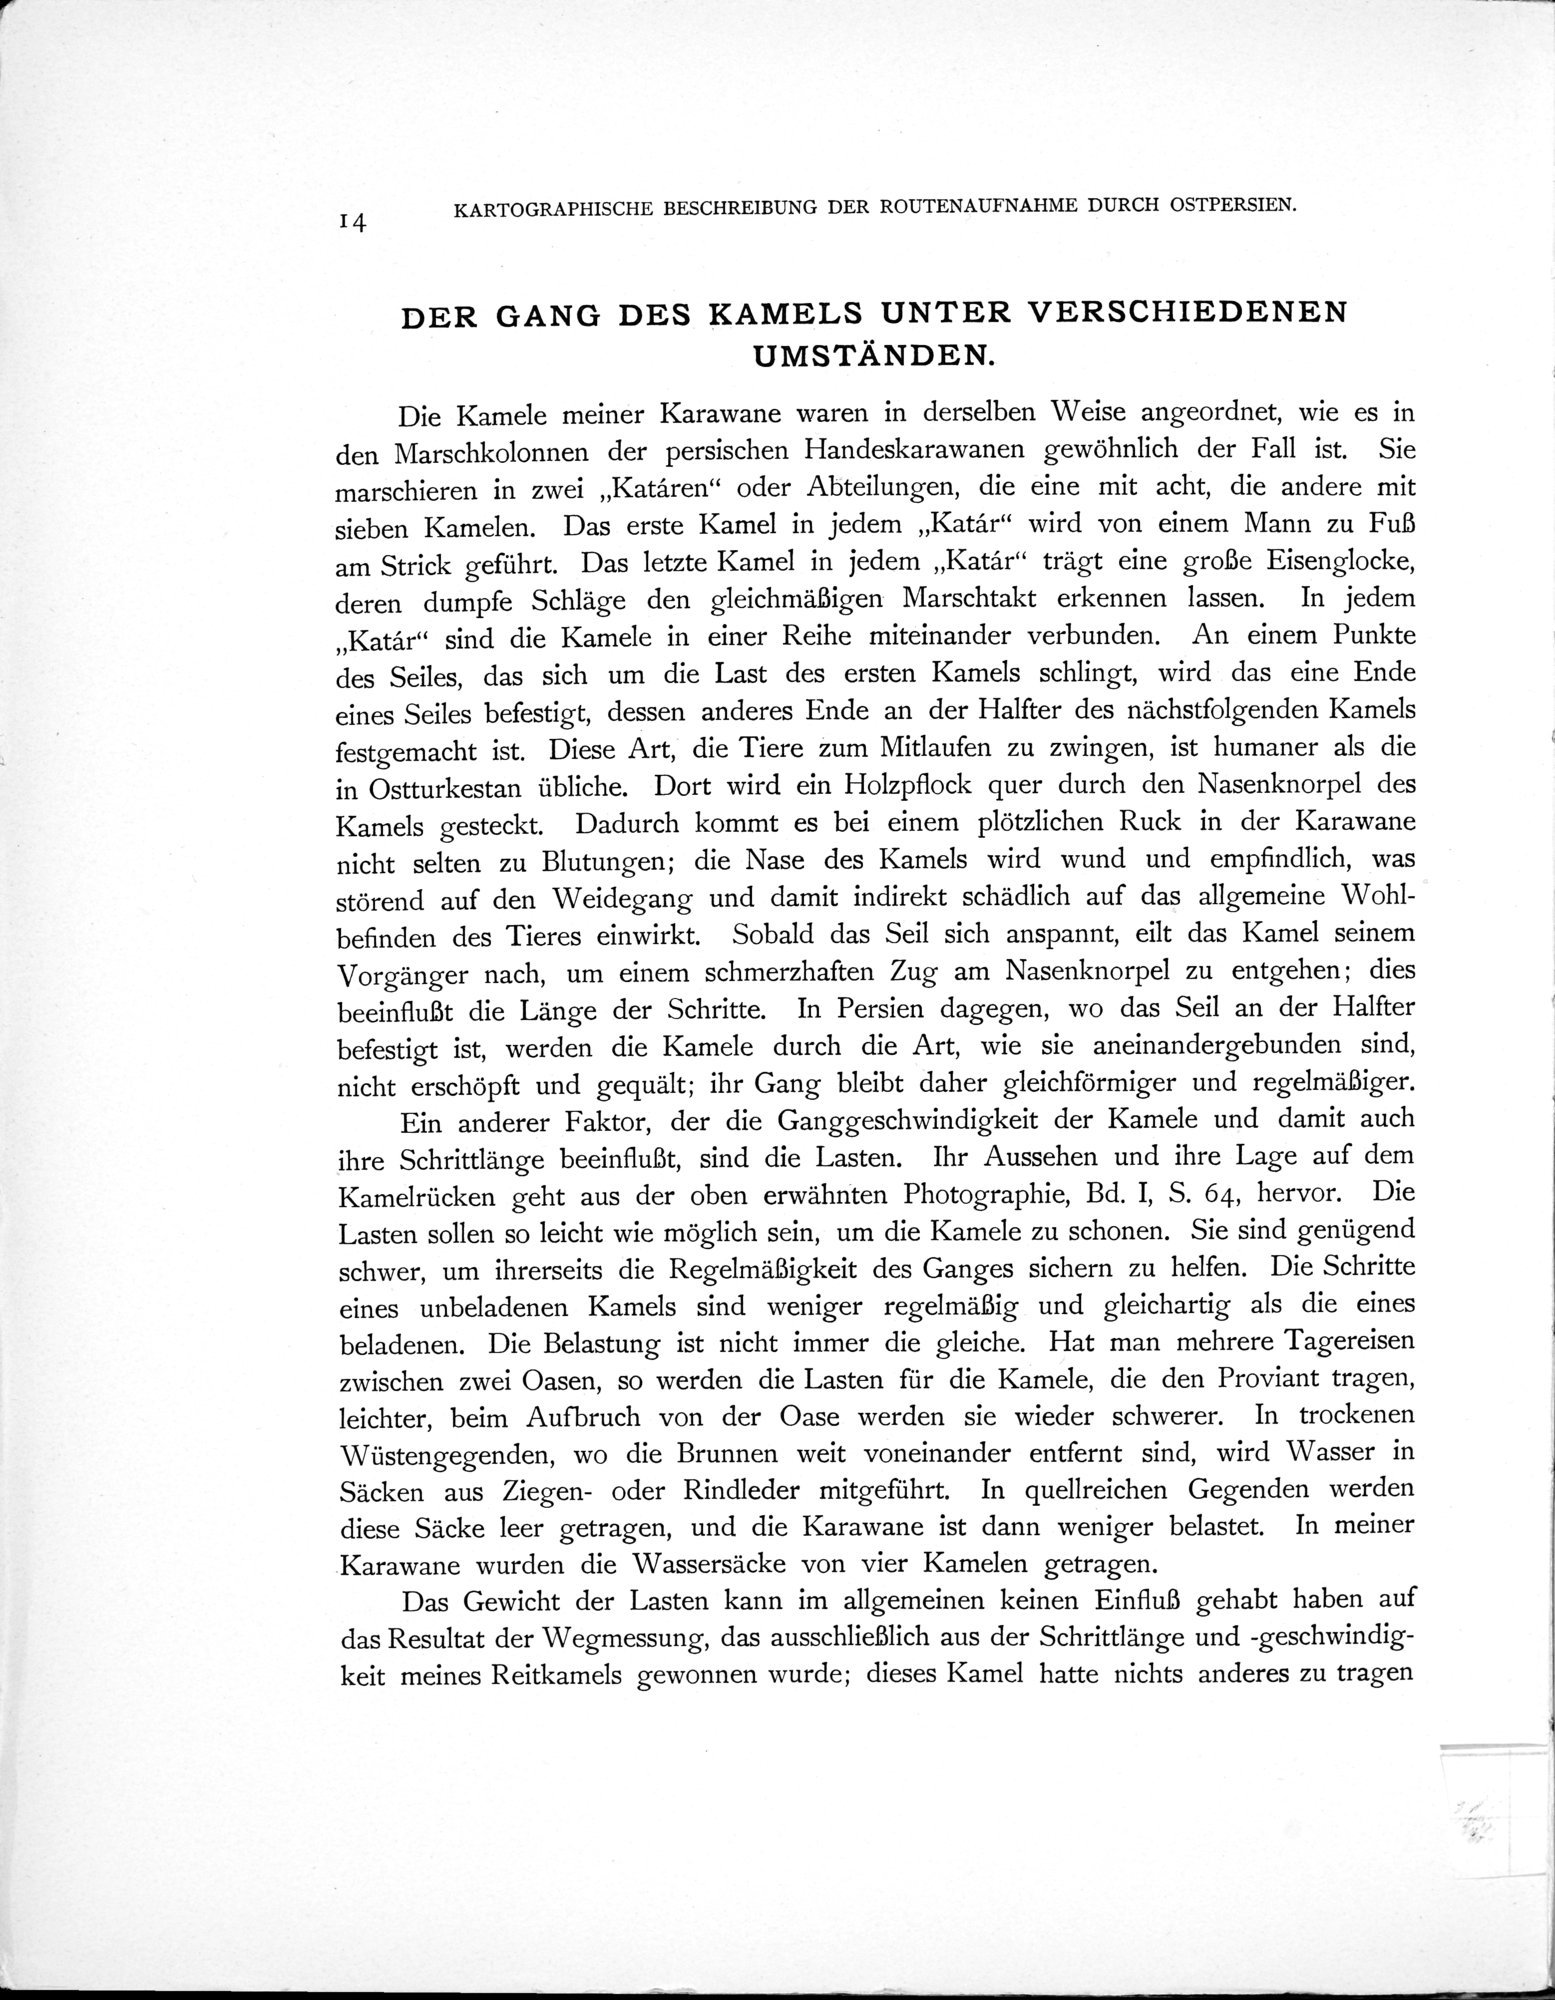 Eine Routenaufnahme durch Ostpersien : vol.2 / Page 44 (Grayscale High Resolution Image)